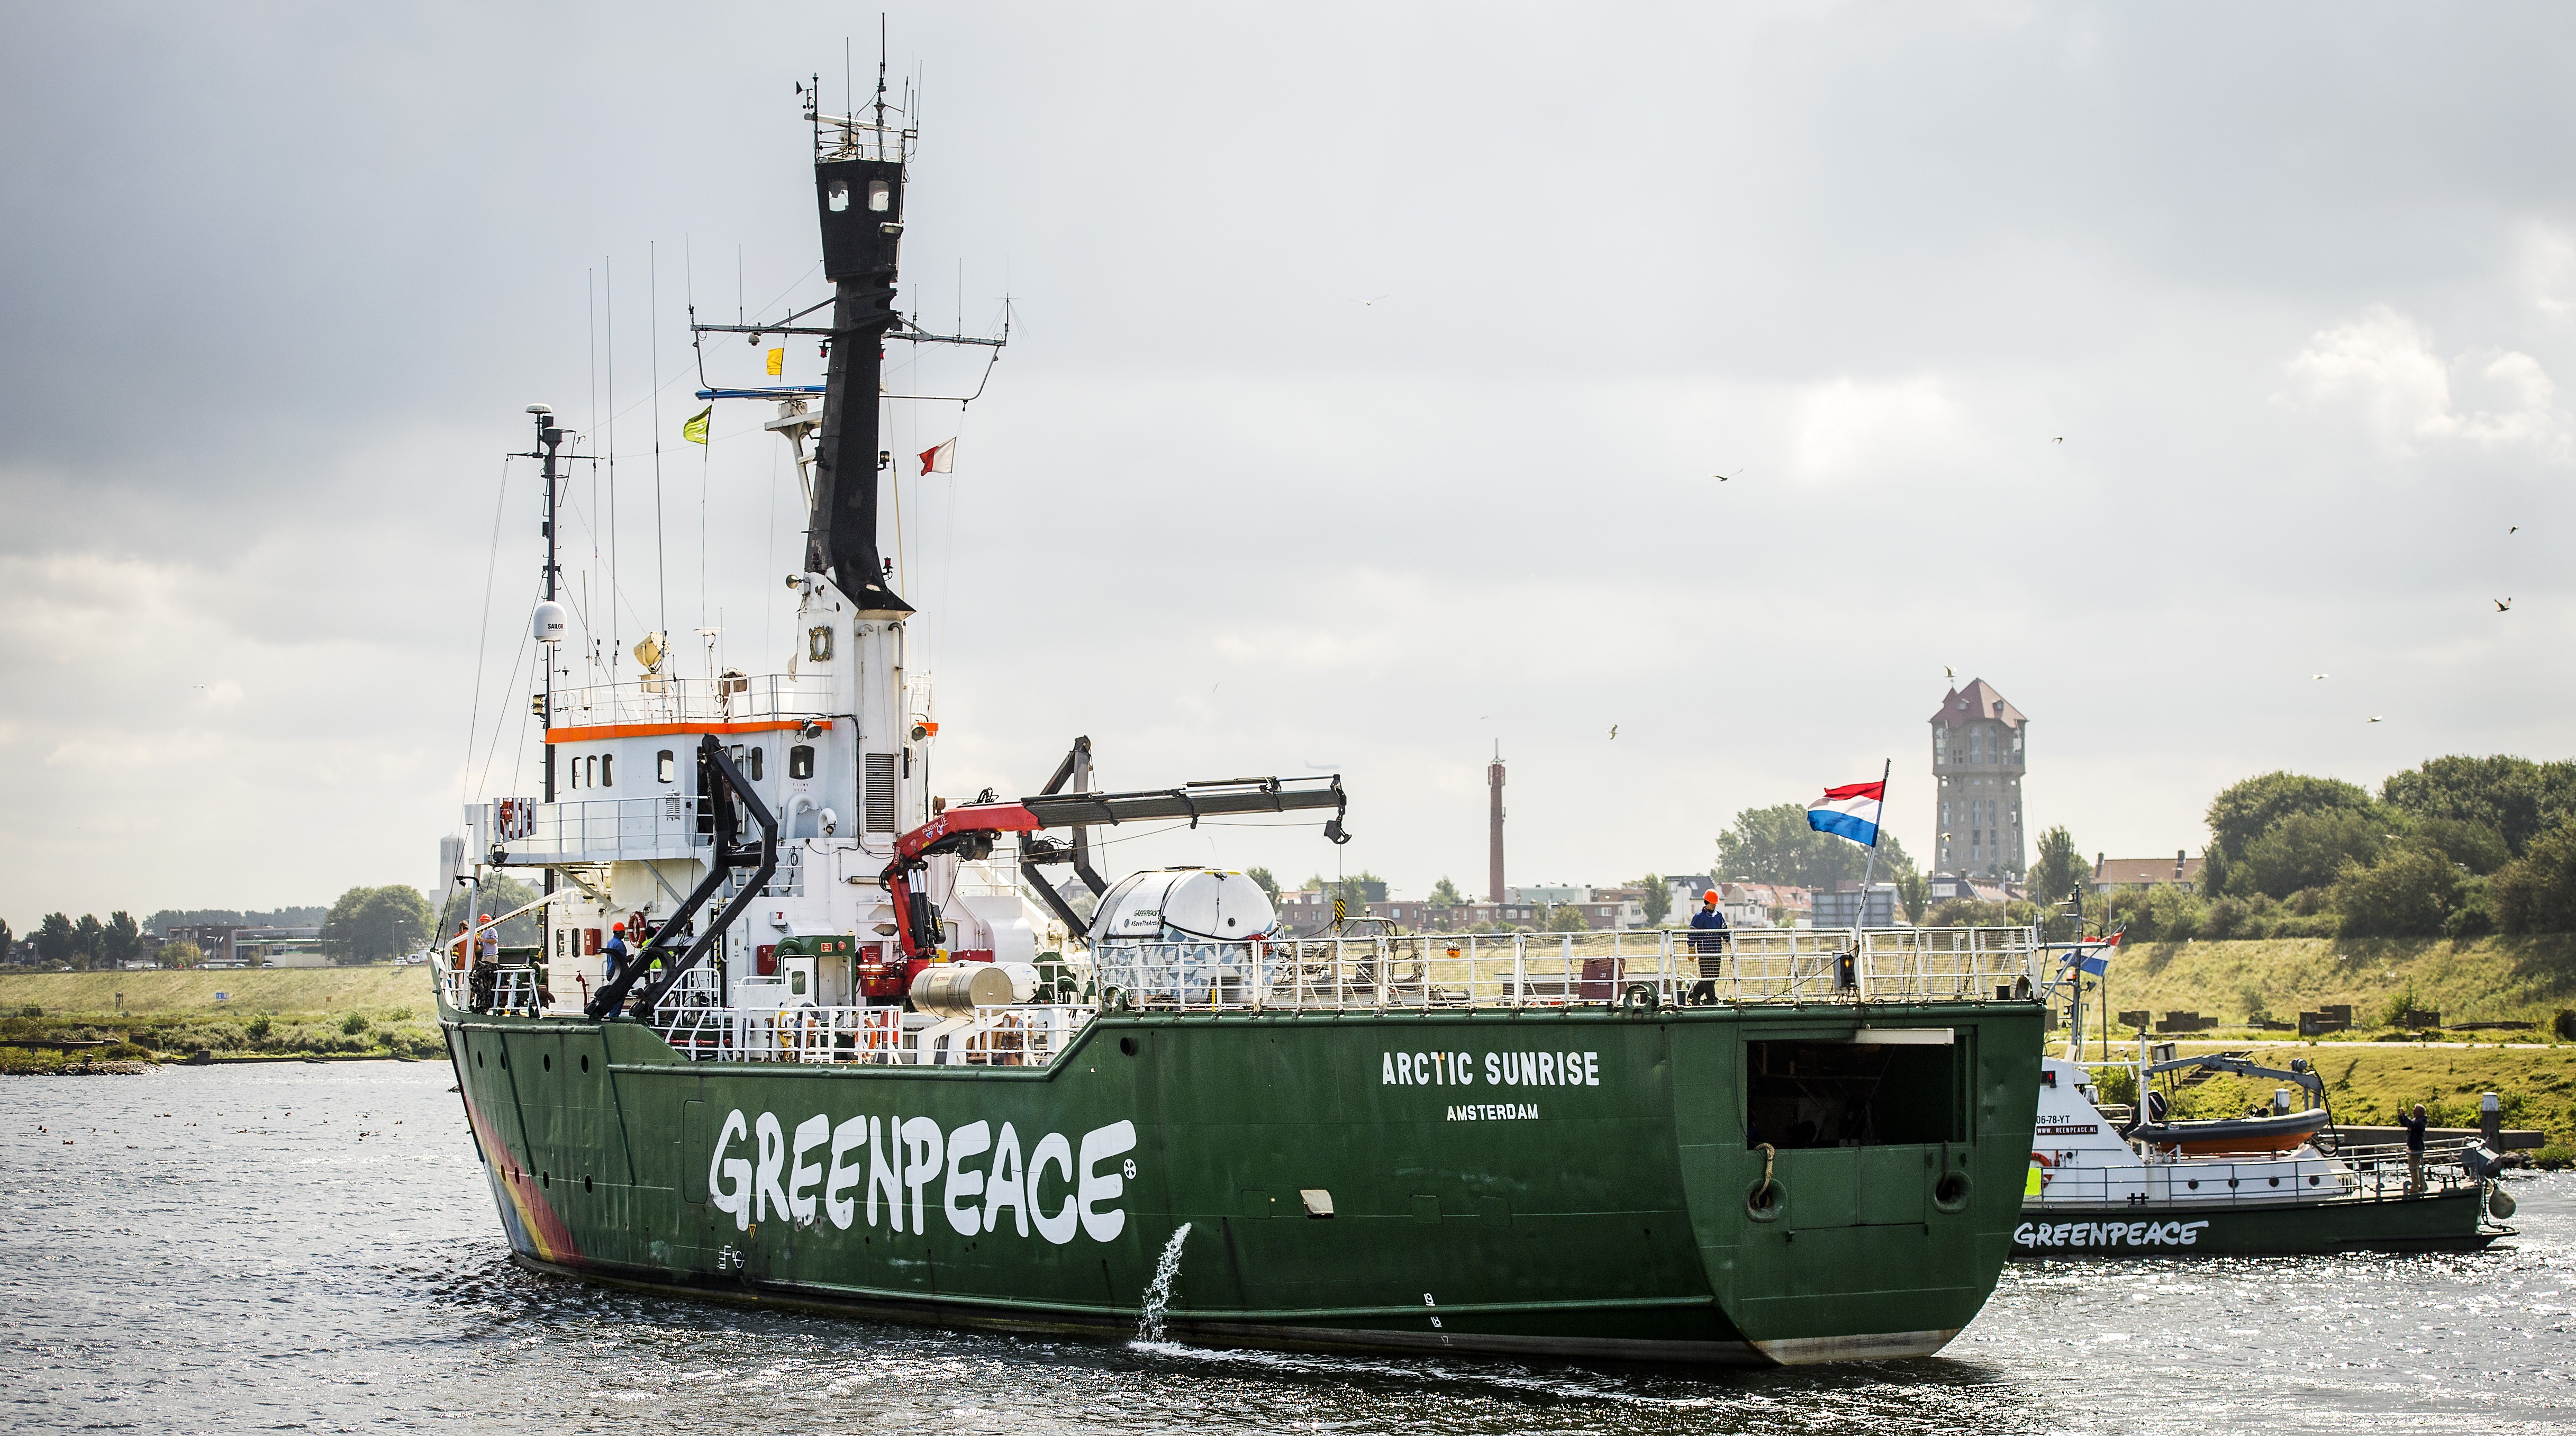 Oroszországnak 5,5 millió eurót kell fizetnie, mert feltartóztatták a Greenpeace hajóját